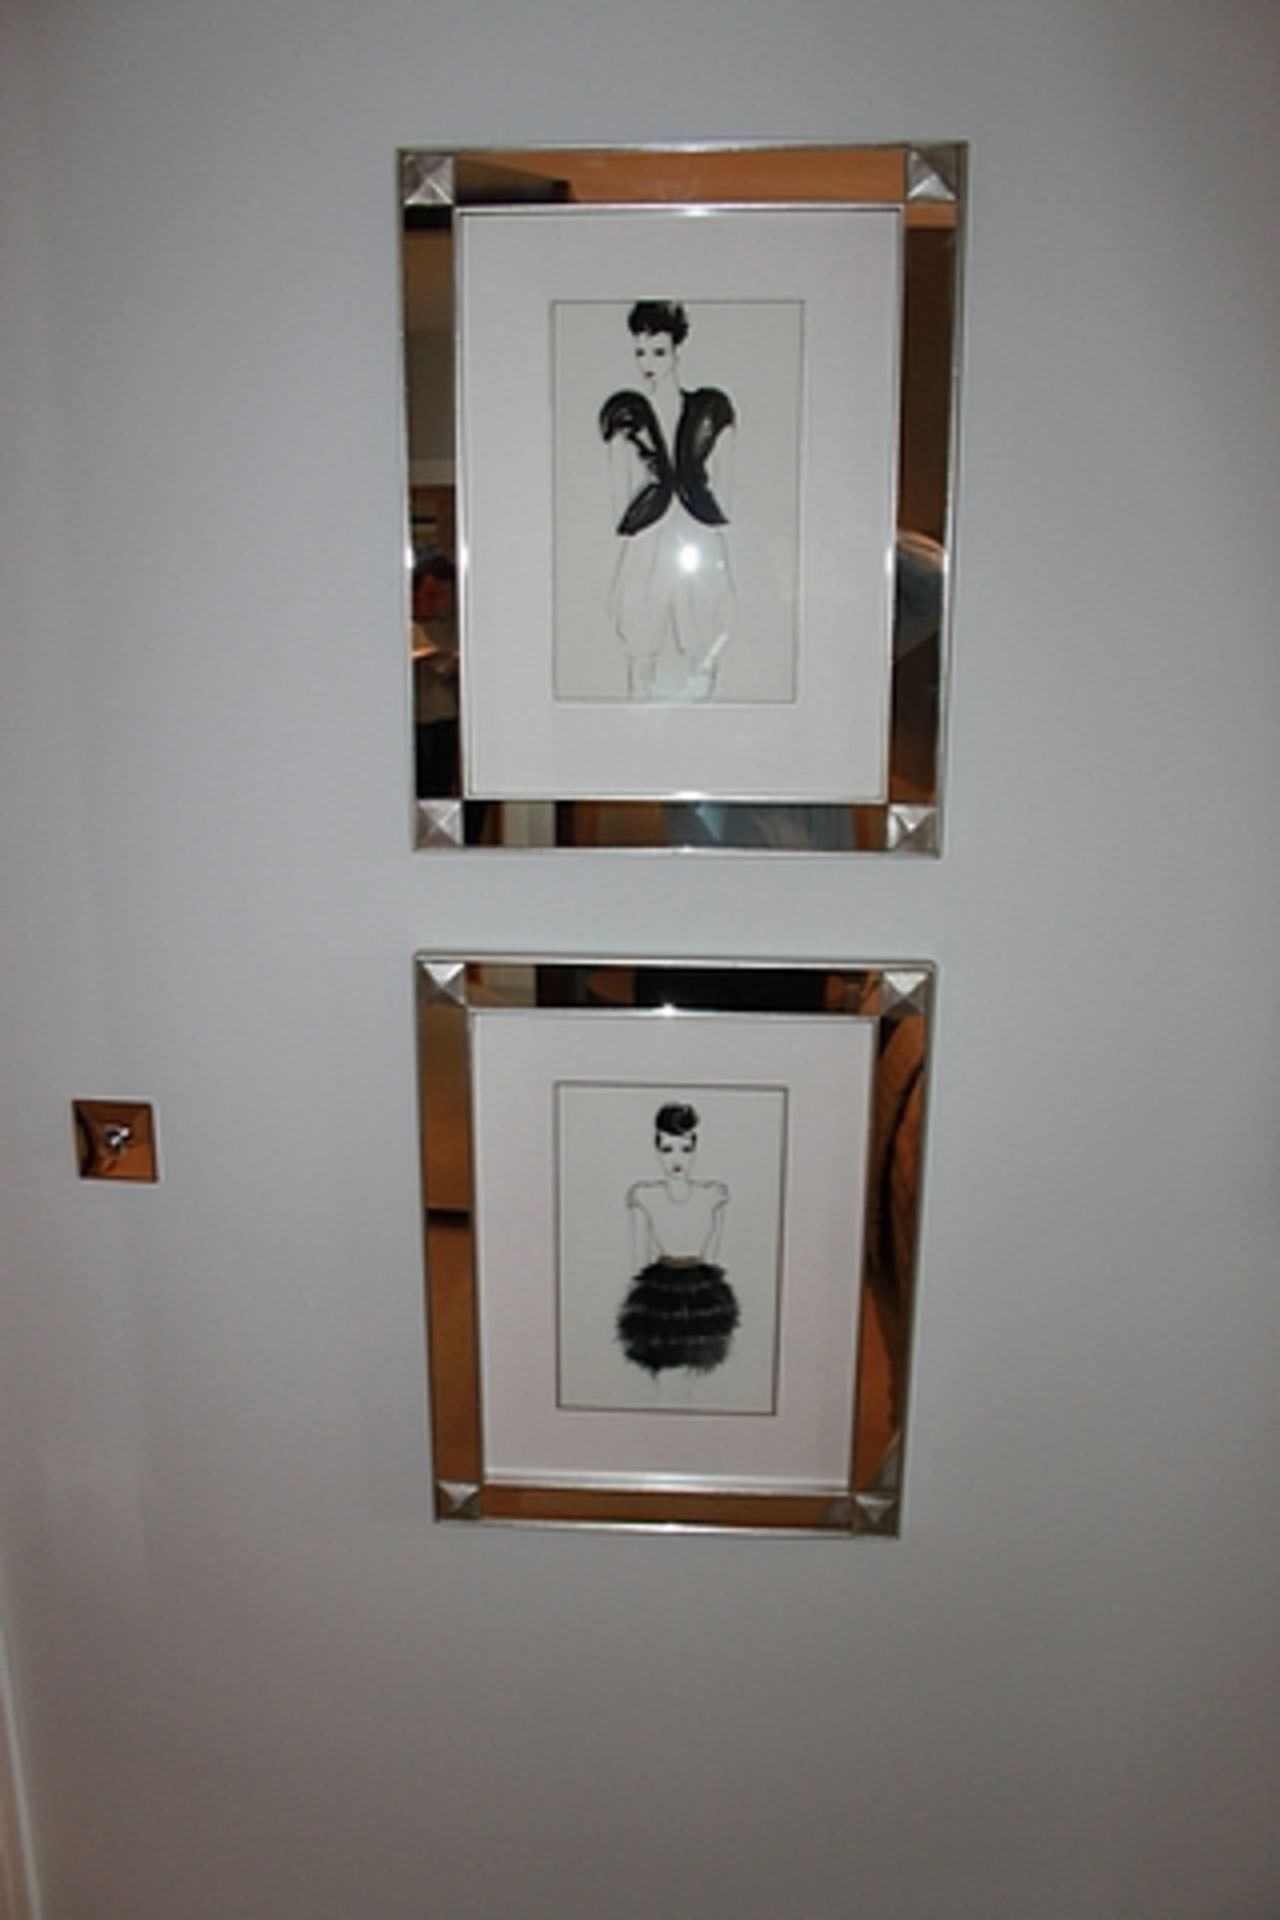 4 x mirrored framed art works